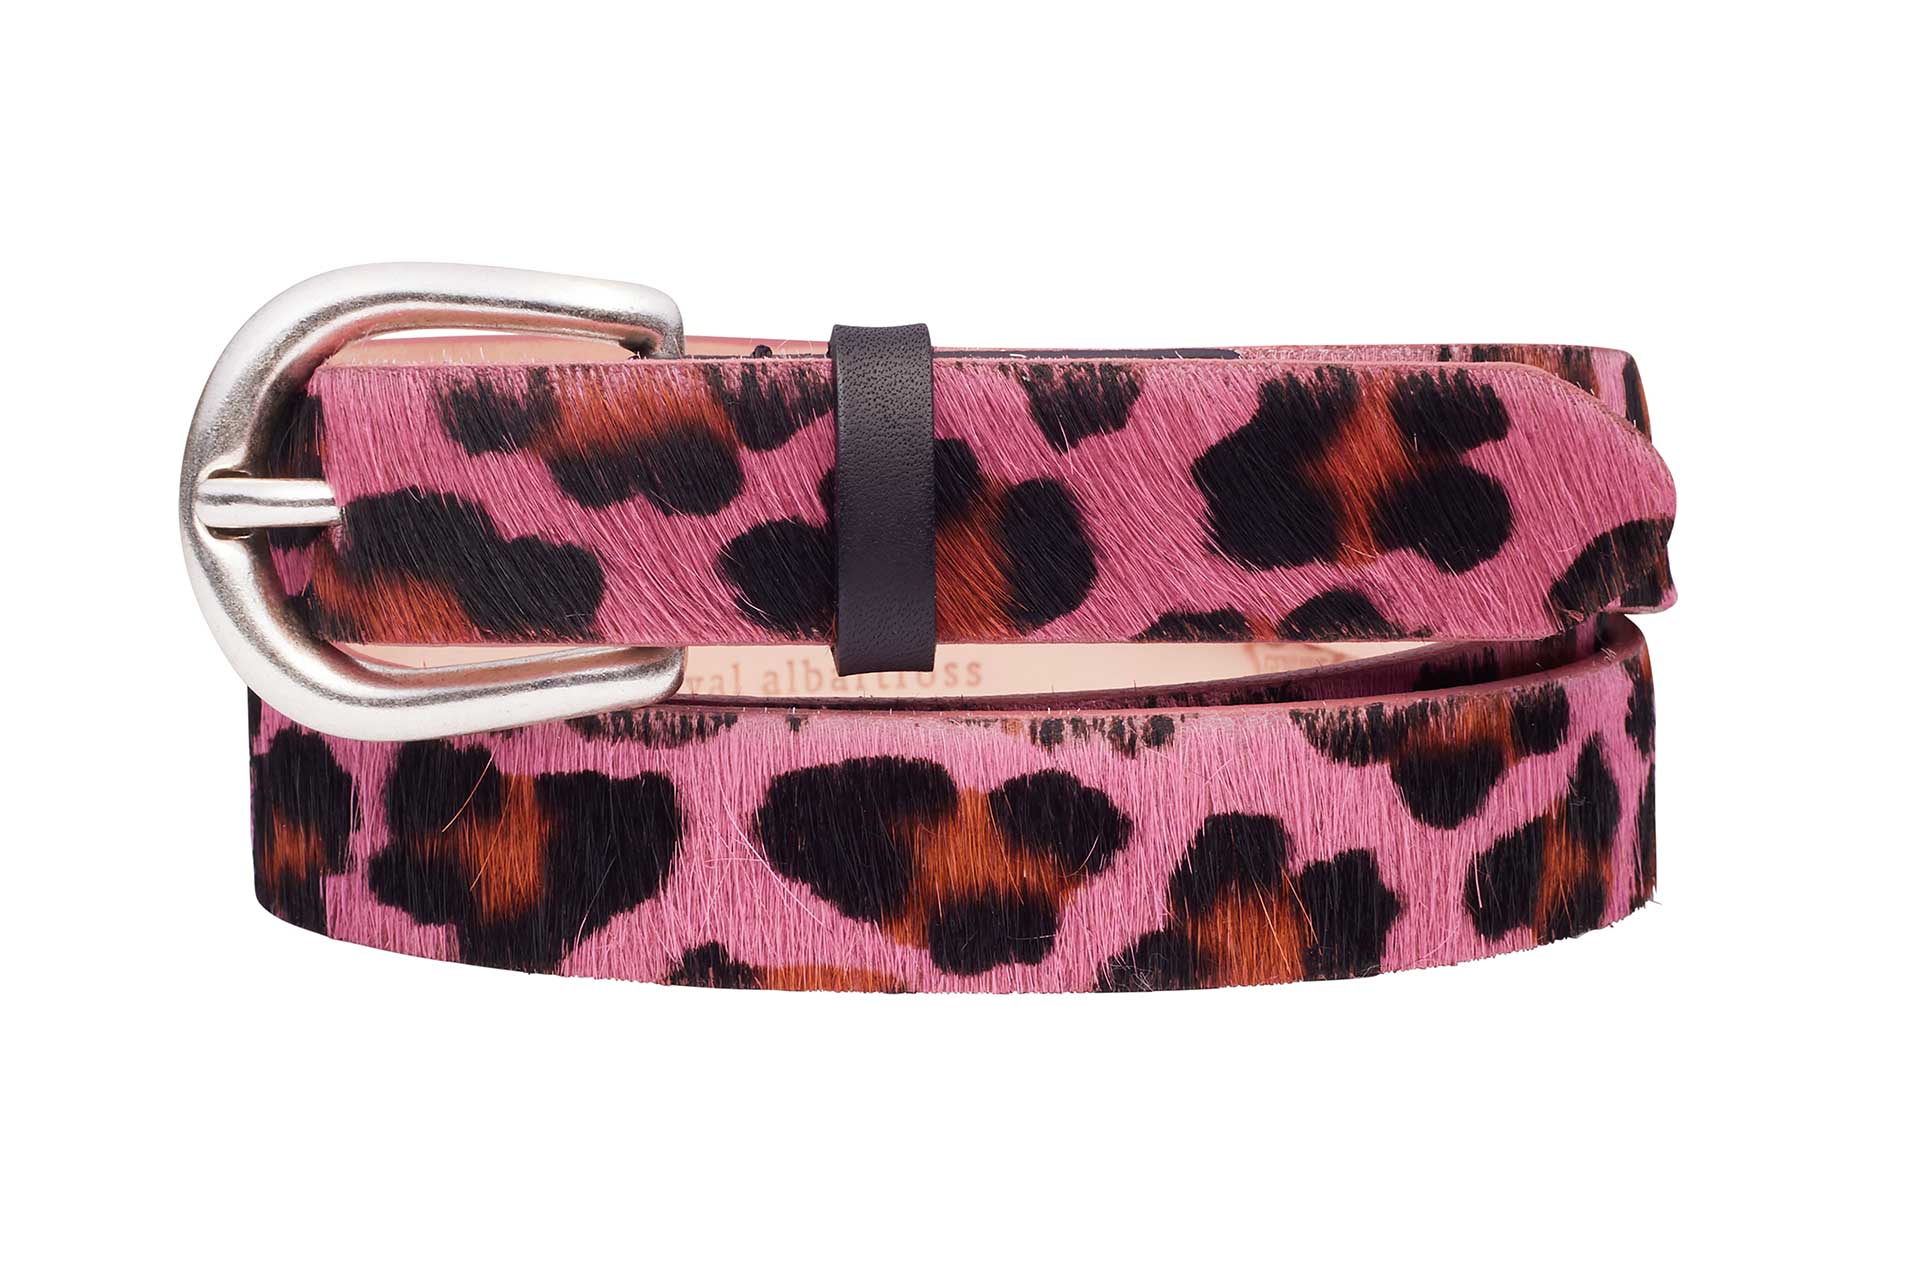 Women's Golf Belt, Foxtrot Pink Leopard